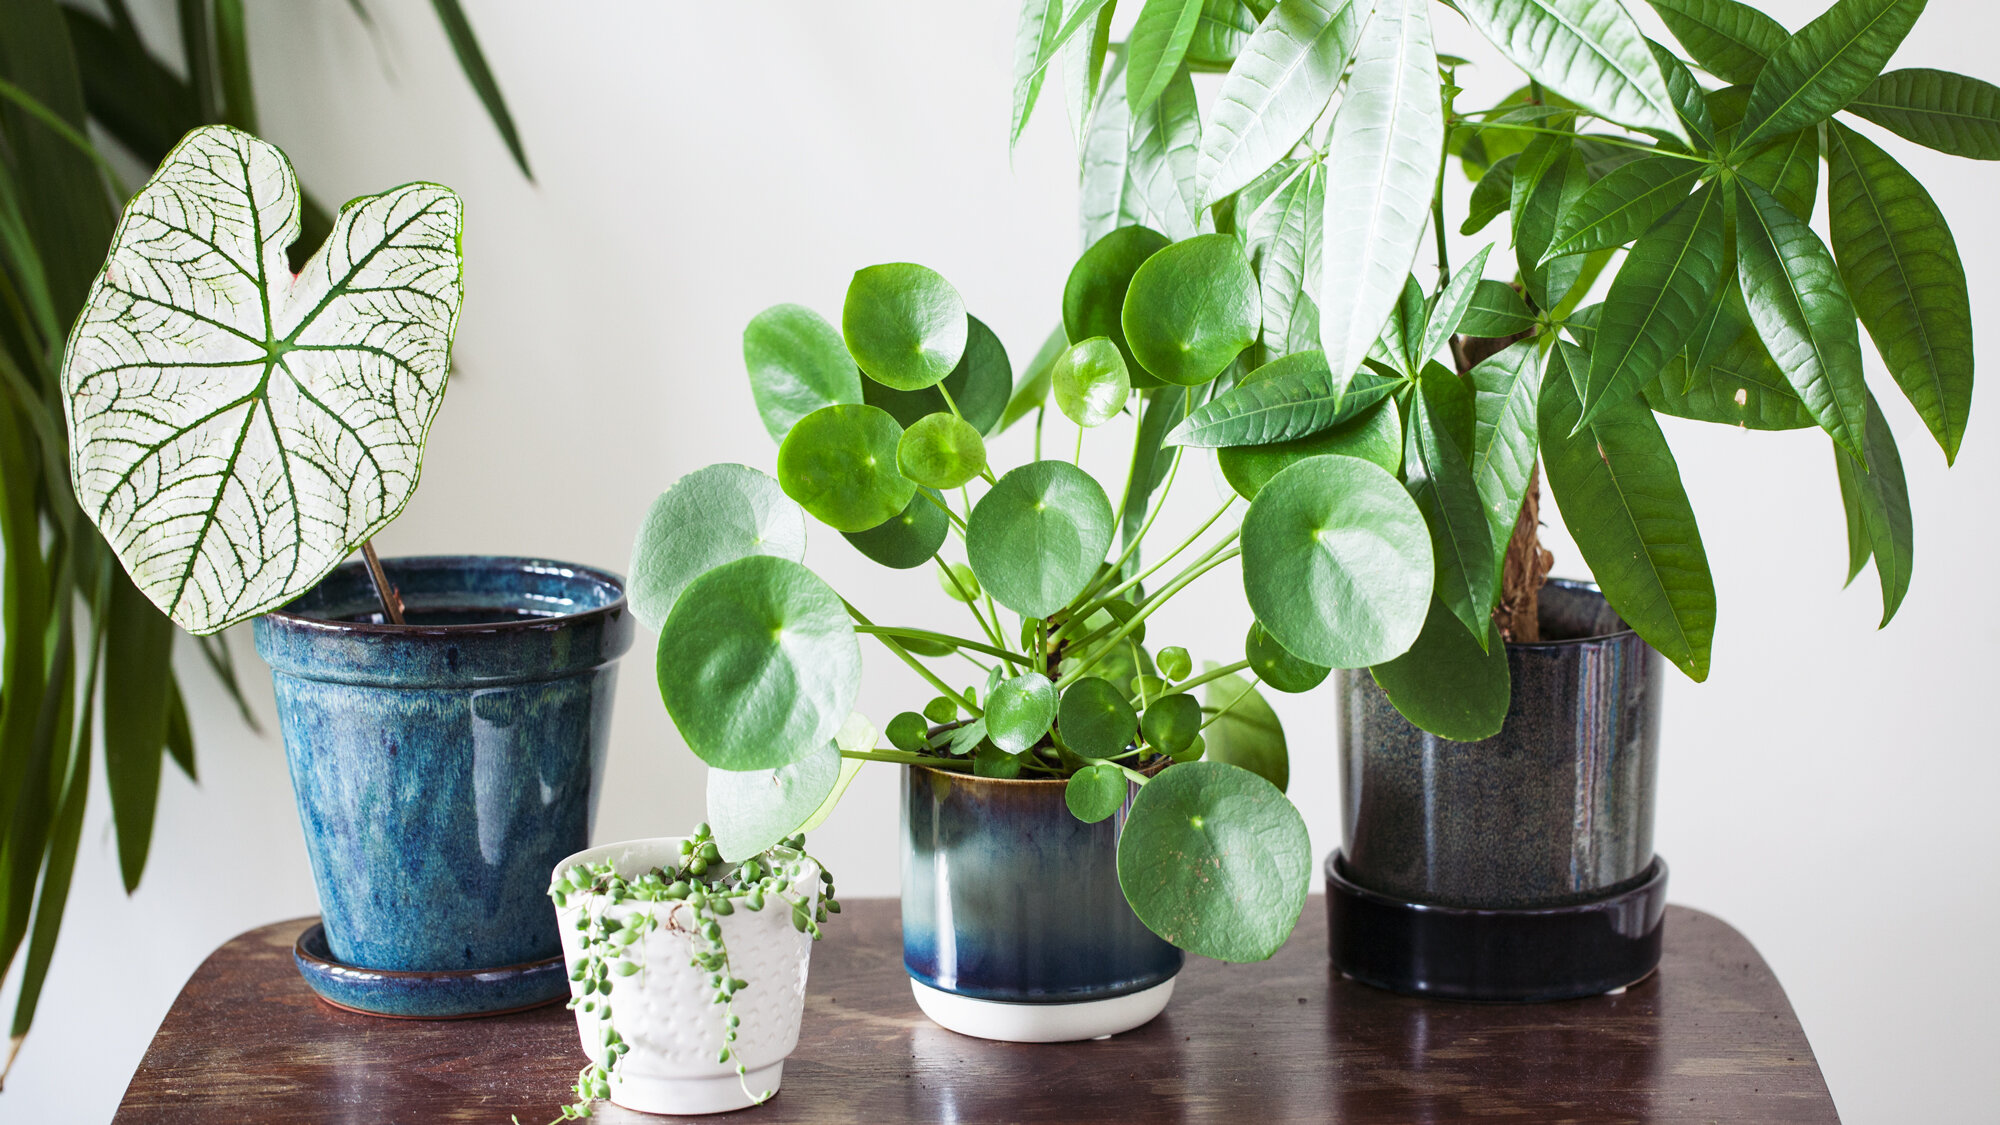 zwaan chef absorptie Waar moet je op letten als je een nieuwe plant koopt? — Mama Botanica